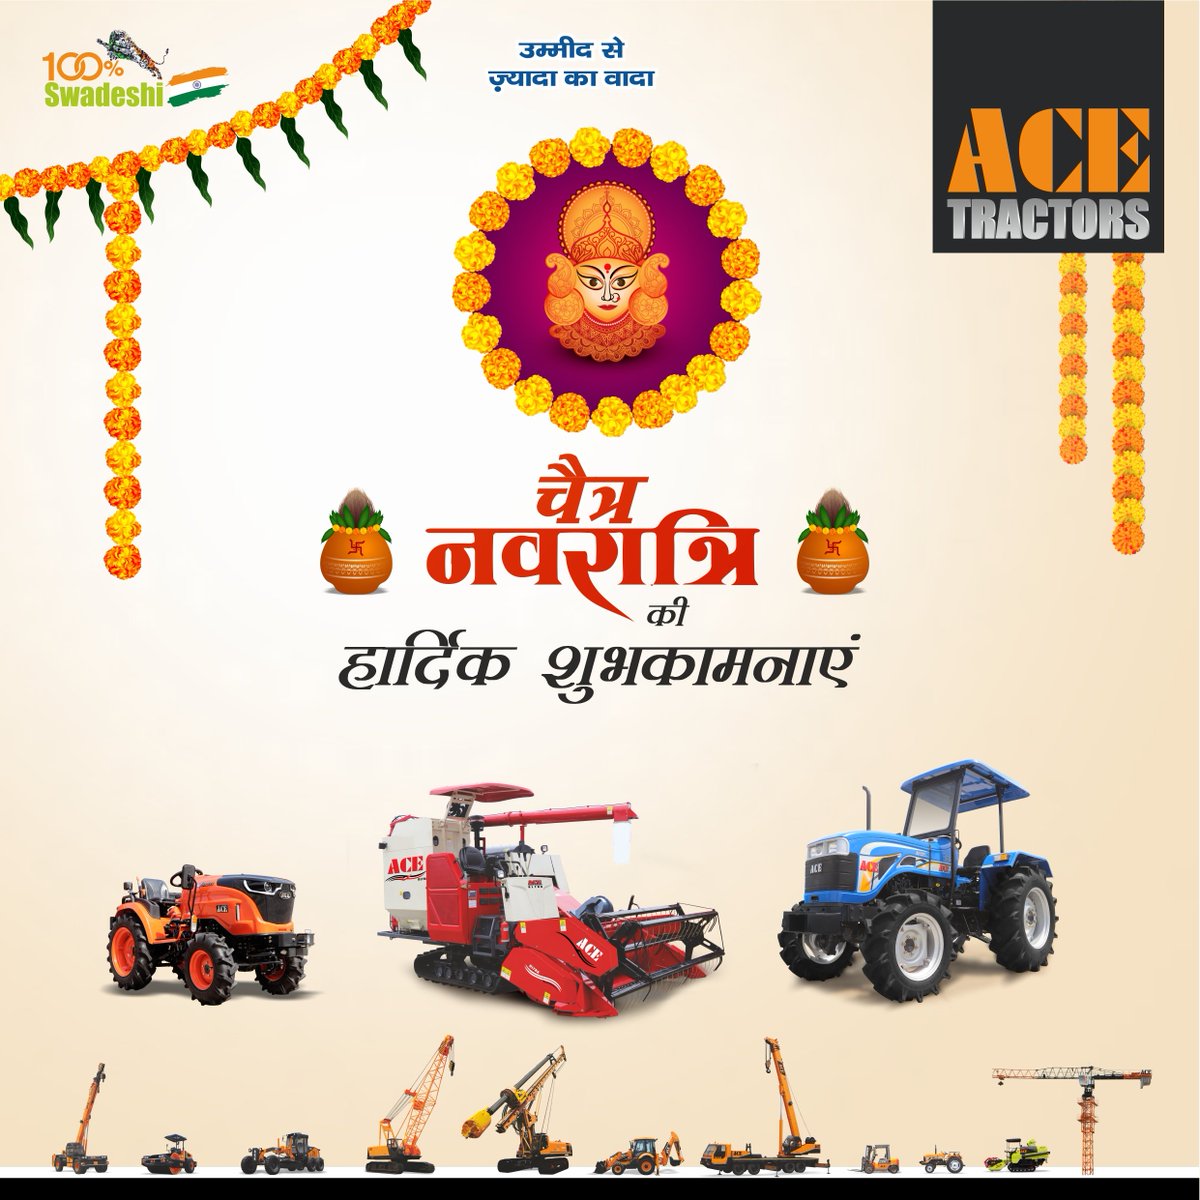 ACE ट्रैक्टर्स की तरफ से आप सभी को चैत्र #नवरात्रि की हार्दिक शुभकामनाएं! आशा है यह नवरात्रि आपके जीवन में खुशियां, समृद्धि और उत्तम स्वास्थ्य लाए। ✨
#ACE #AceTractorsIndia #AceTractors #ChaitraNavratri #Navratri #Navratri2024 #Tractors #AgriEquipment #Harvester #Combine